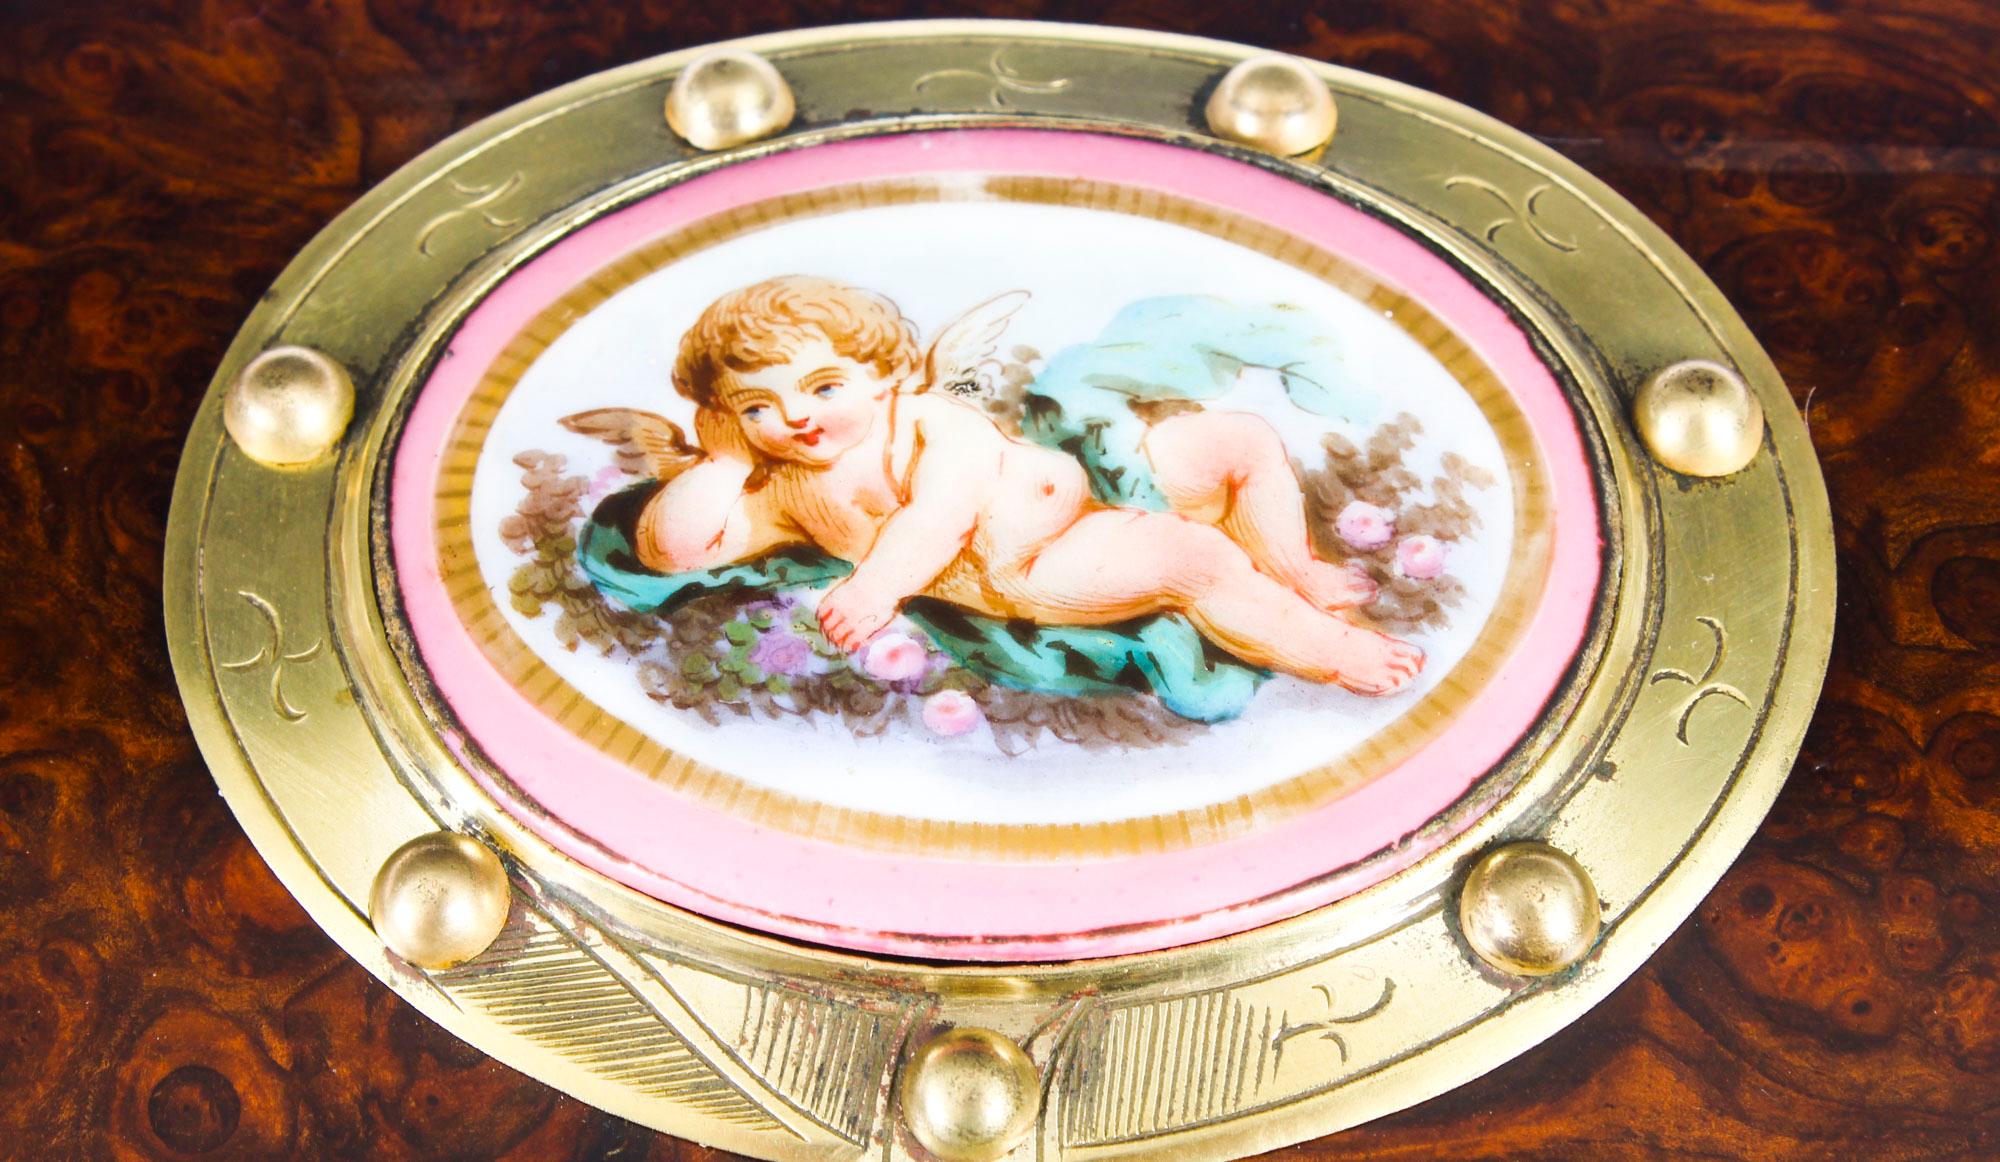 French Antique Burr Walnut Casket Inset Sevres Porcelain Plaque, 19th Century